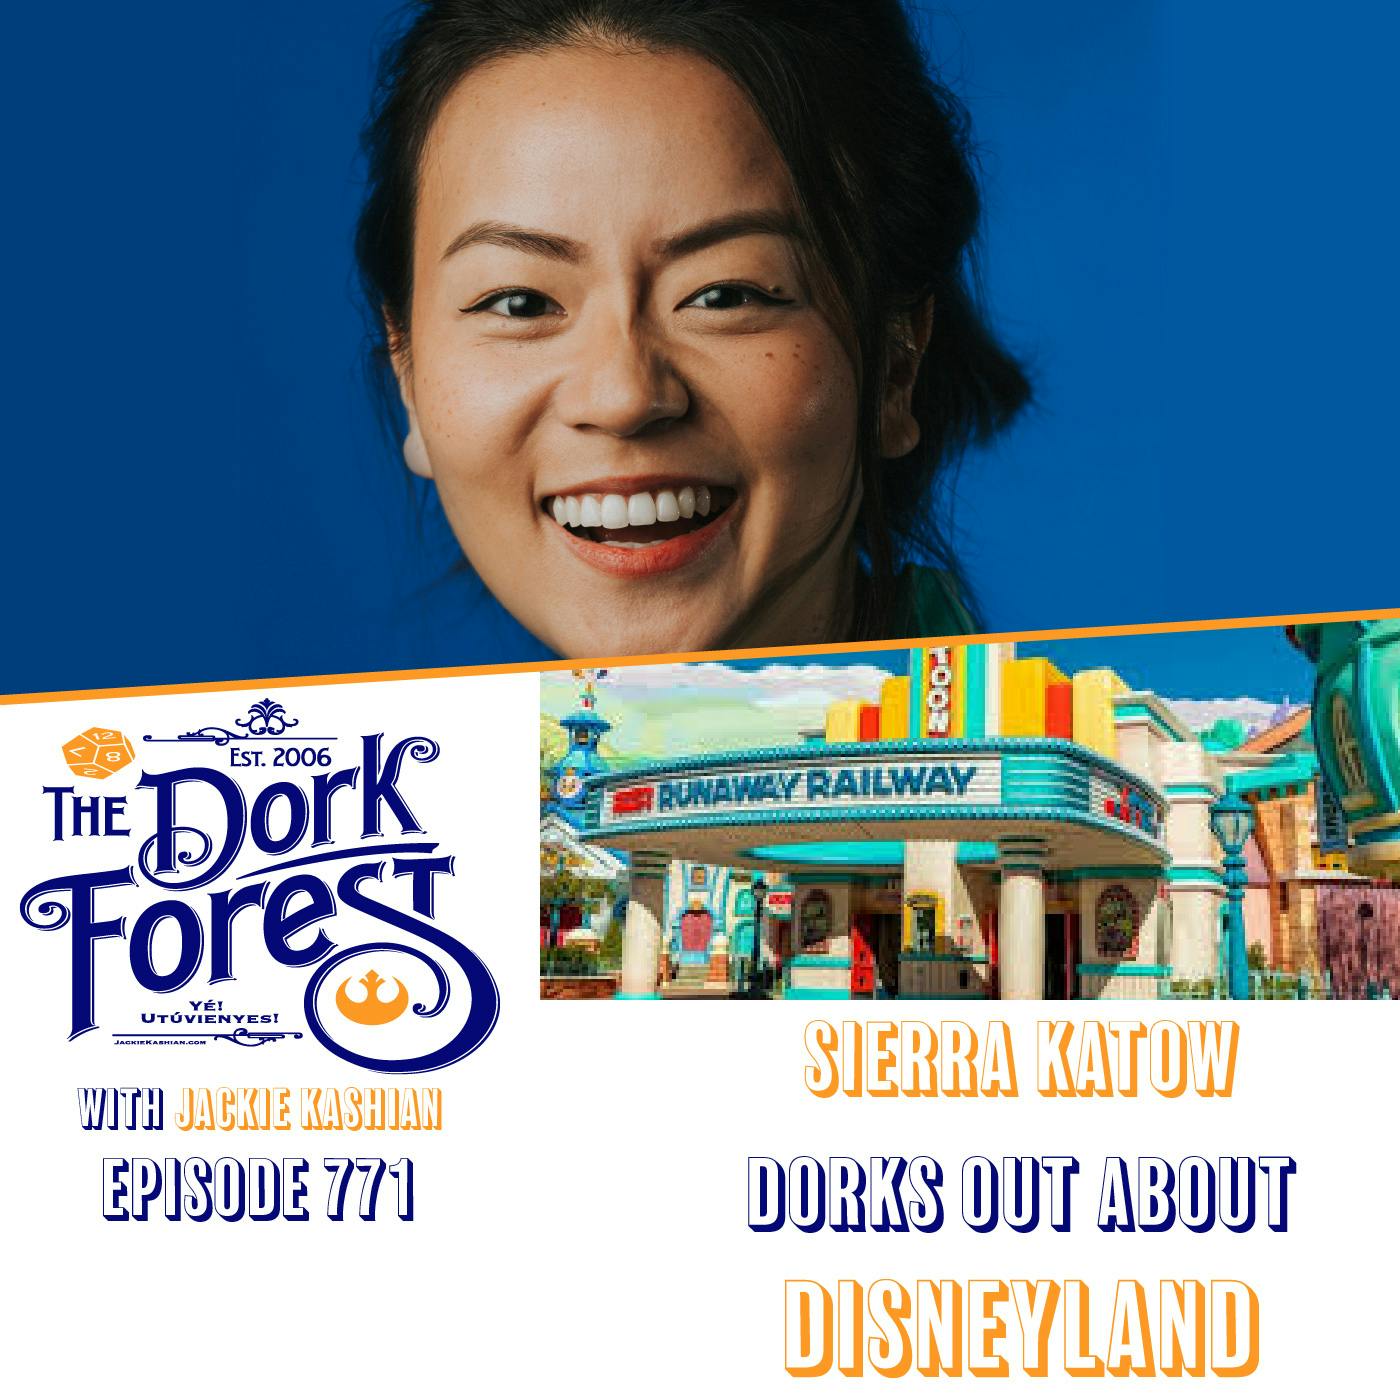 Sierra Katow loves Disneyland – EP 771